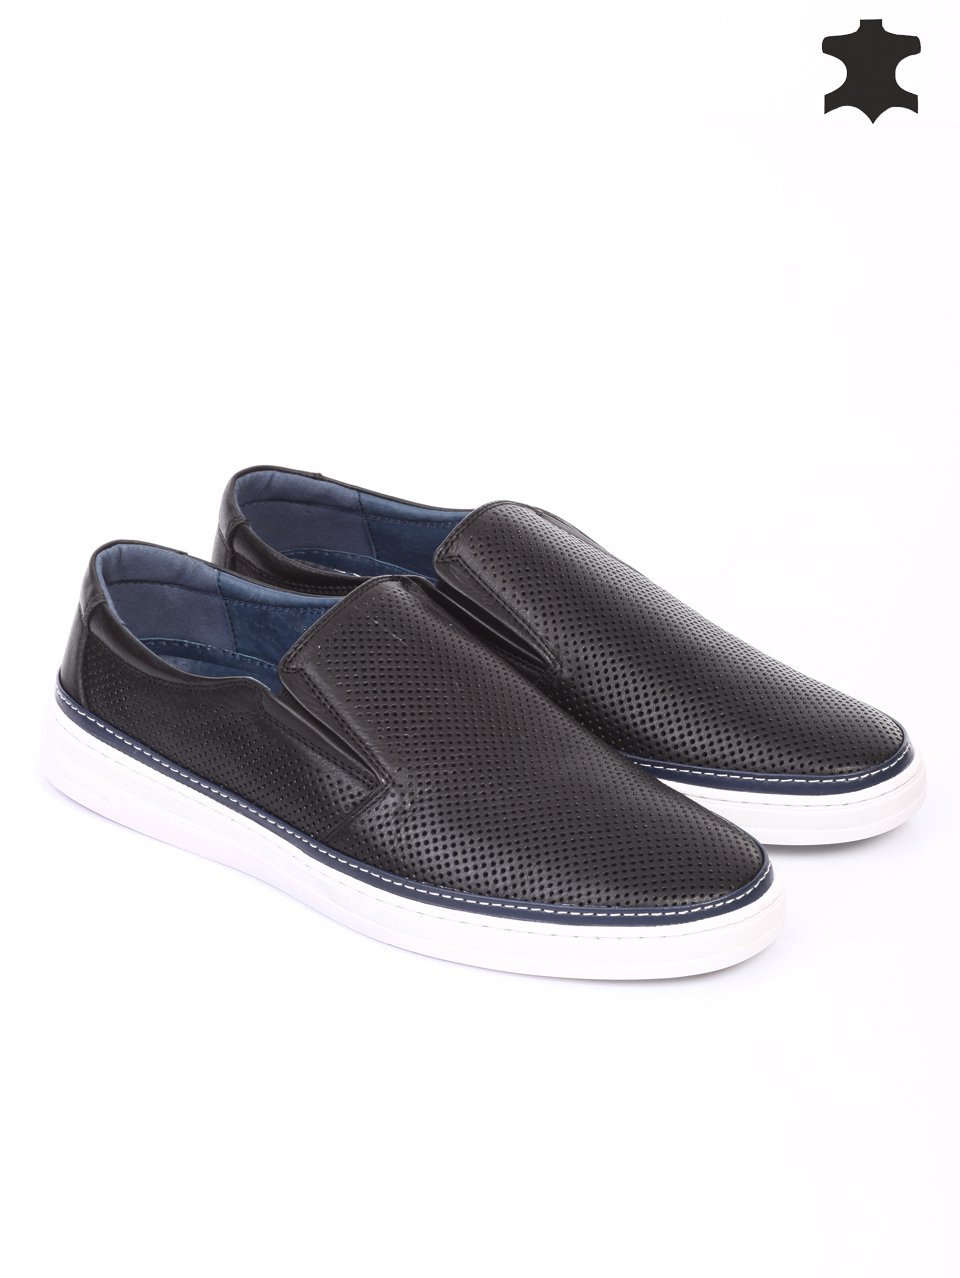 Ежедневни мъжки обувки от естествена кожа в черно 7N-16275 black